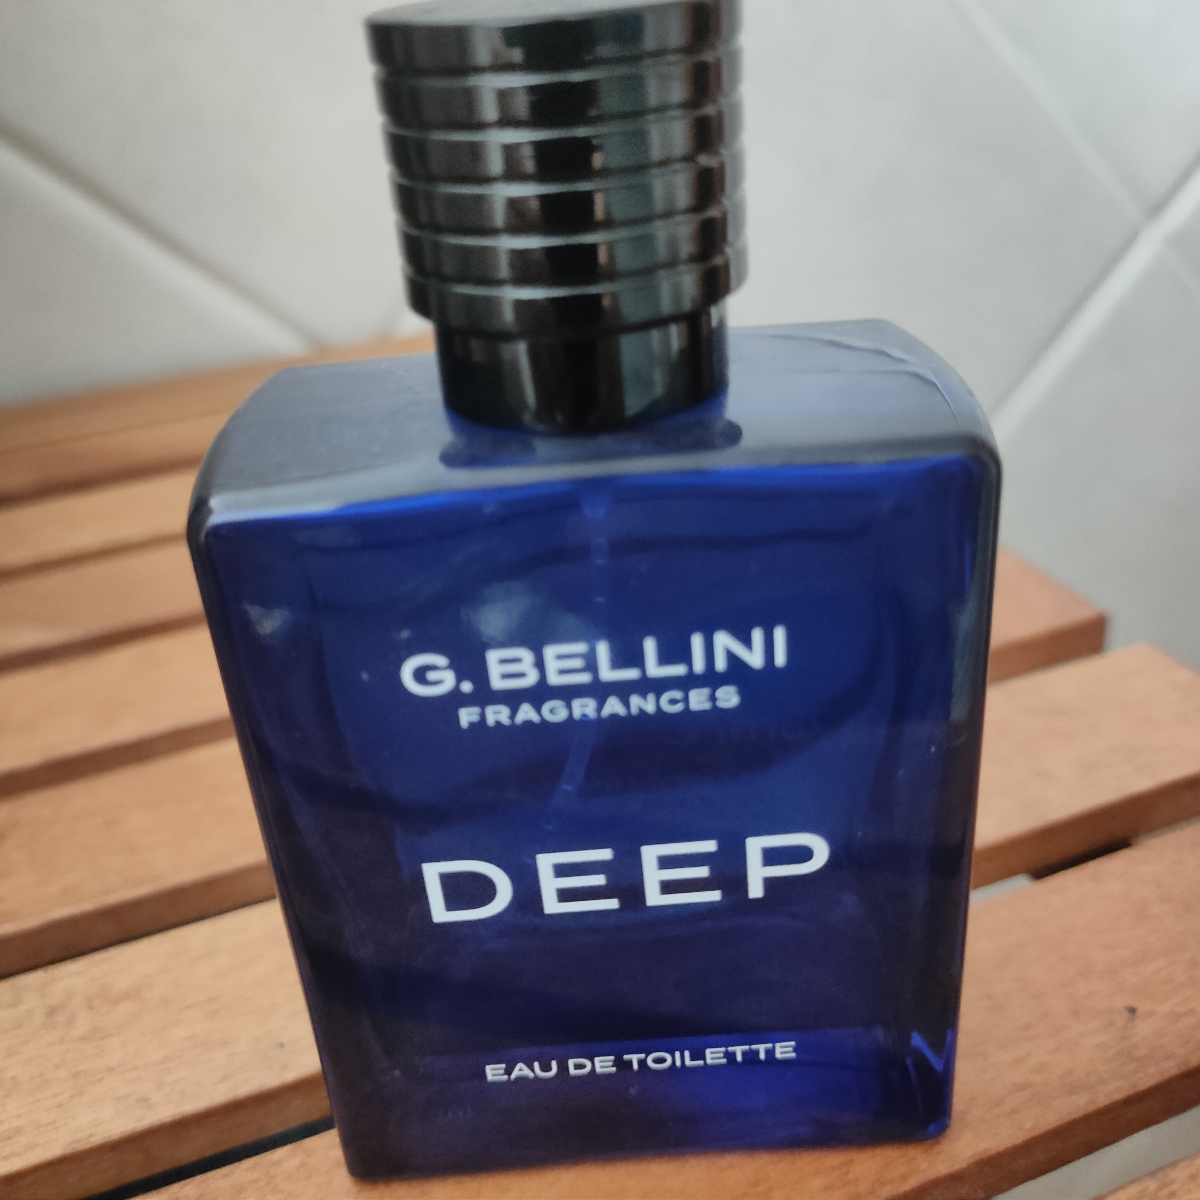 G Bellini Fragrances Deep Eau de Toilette Reviews | abillion